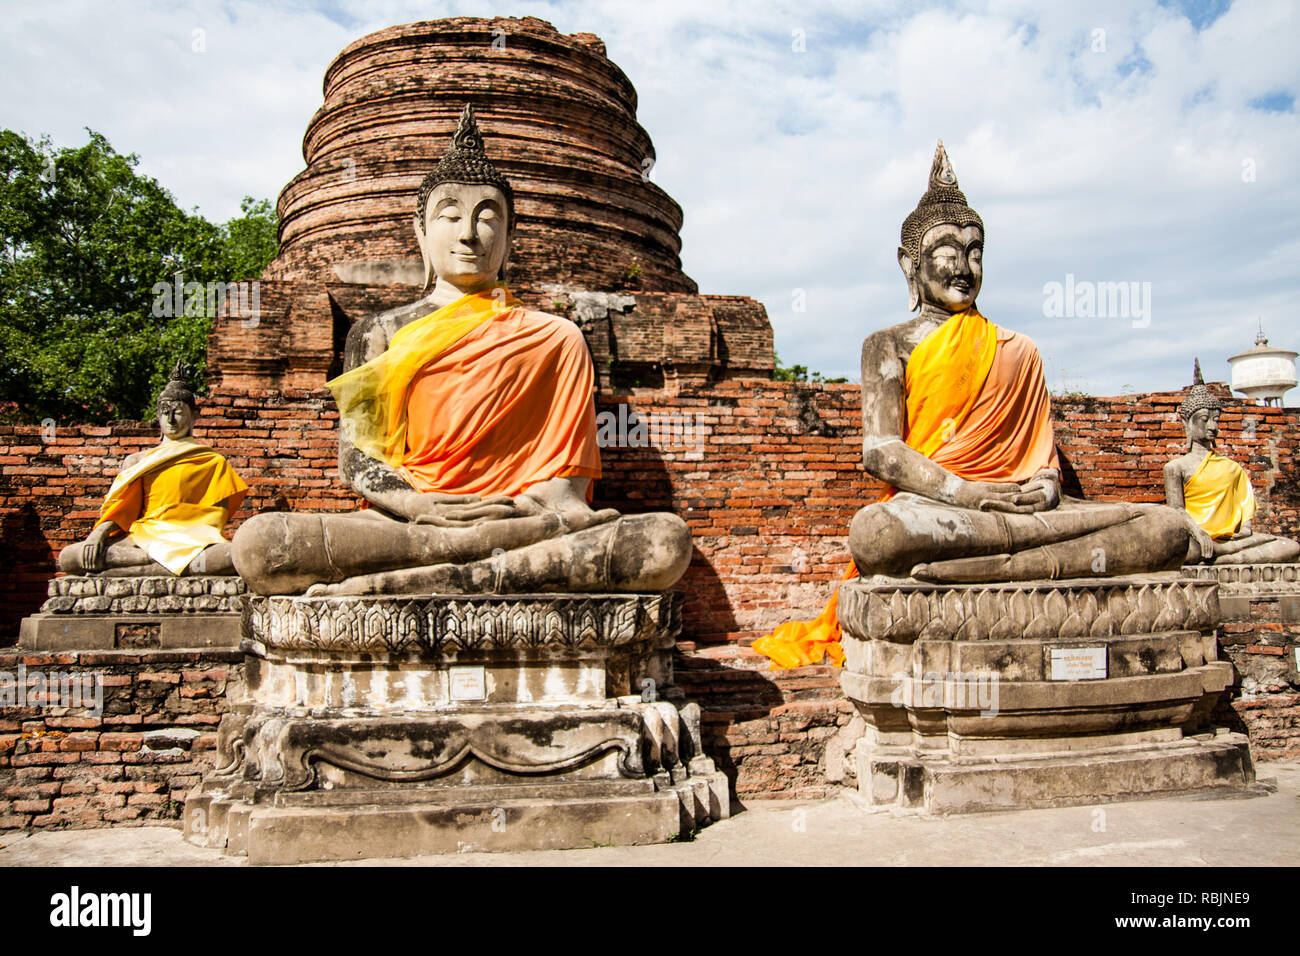 Les apprentis de Bouddha du Wat Yai Chai Mongkol, Ayutthaya, Thaïlande Banque D'Images